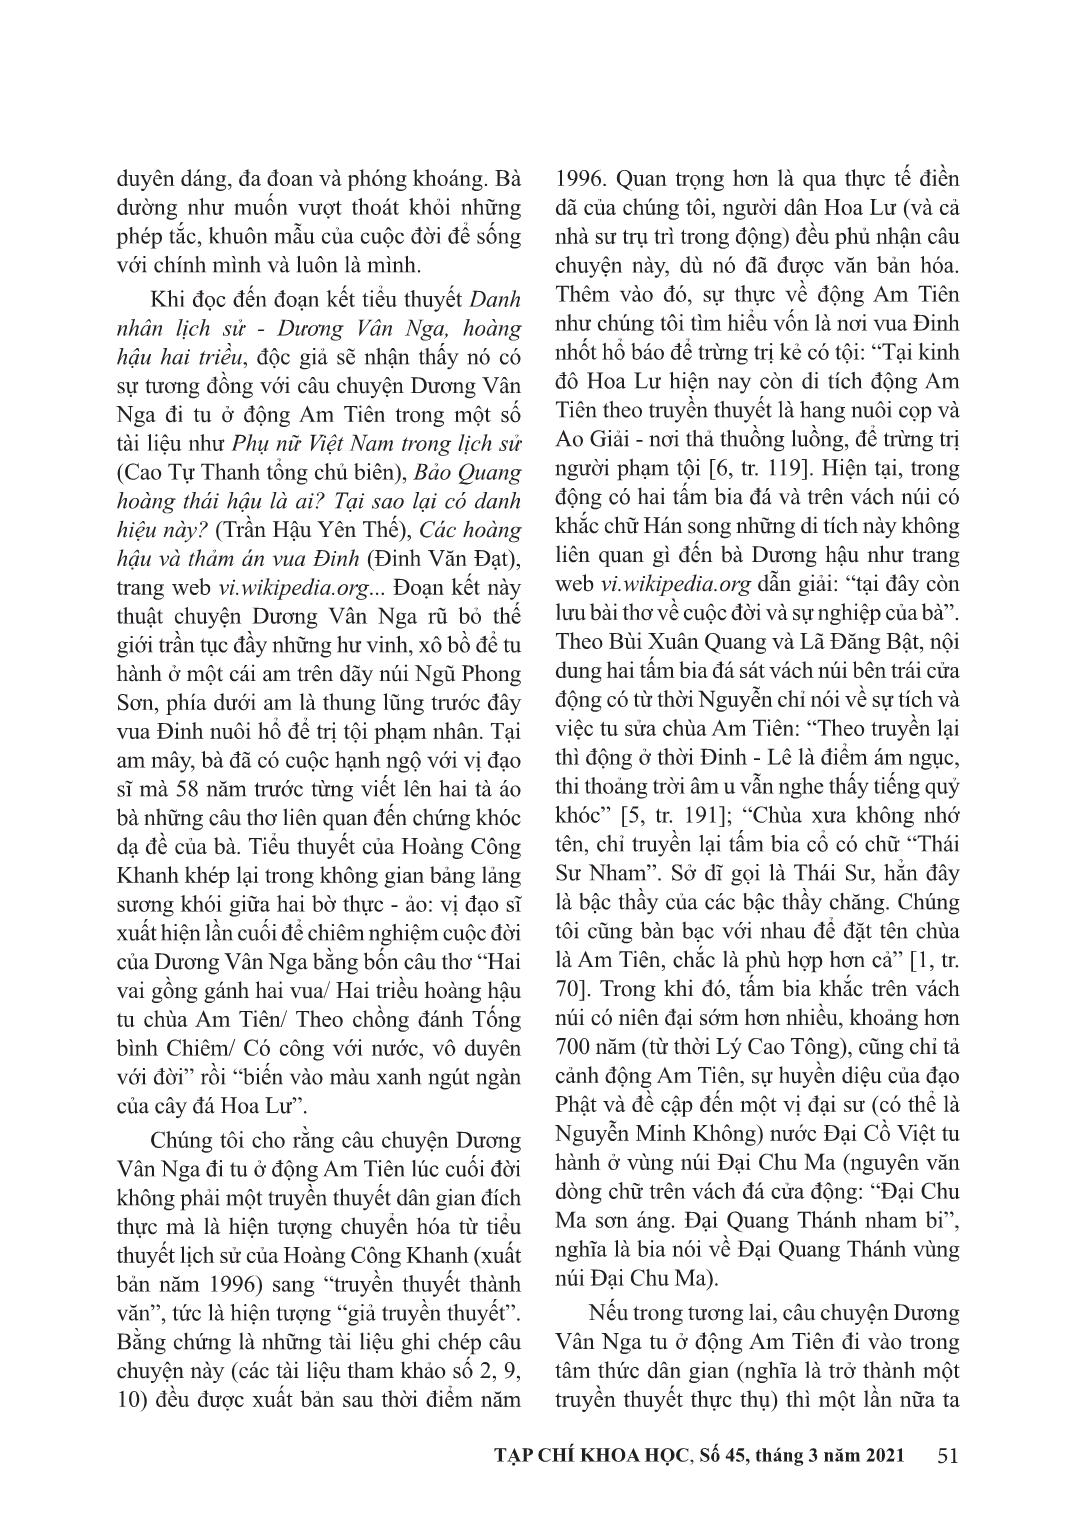 Nhân vật Dương Vân Na trong văn học nghệ thuật đương đại trang 4